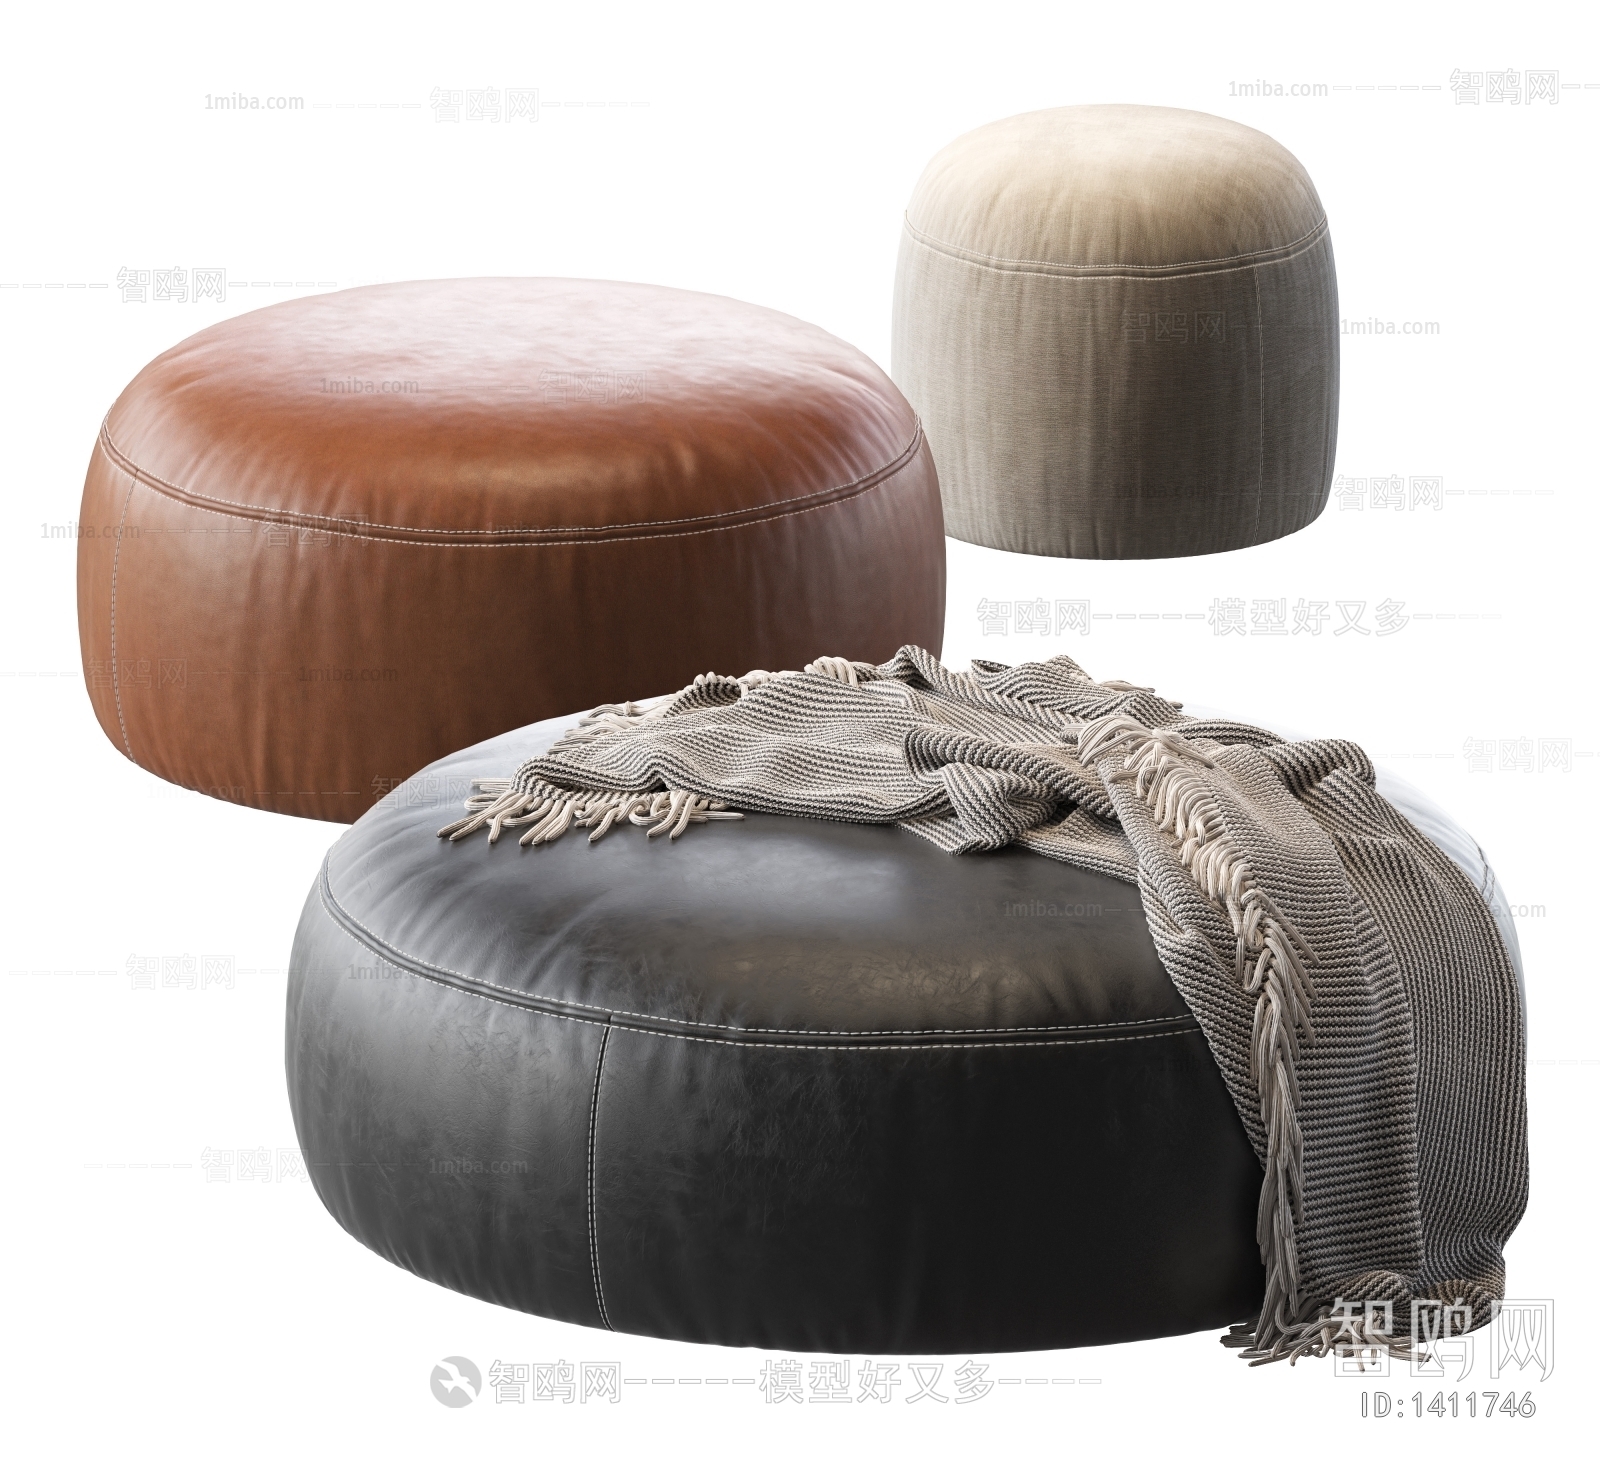 PoliformElise,软包,坐垫,沙发凳